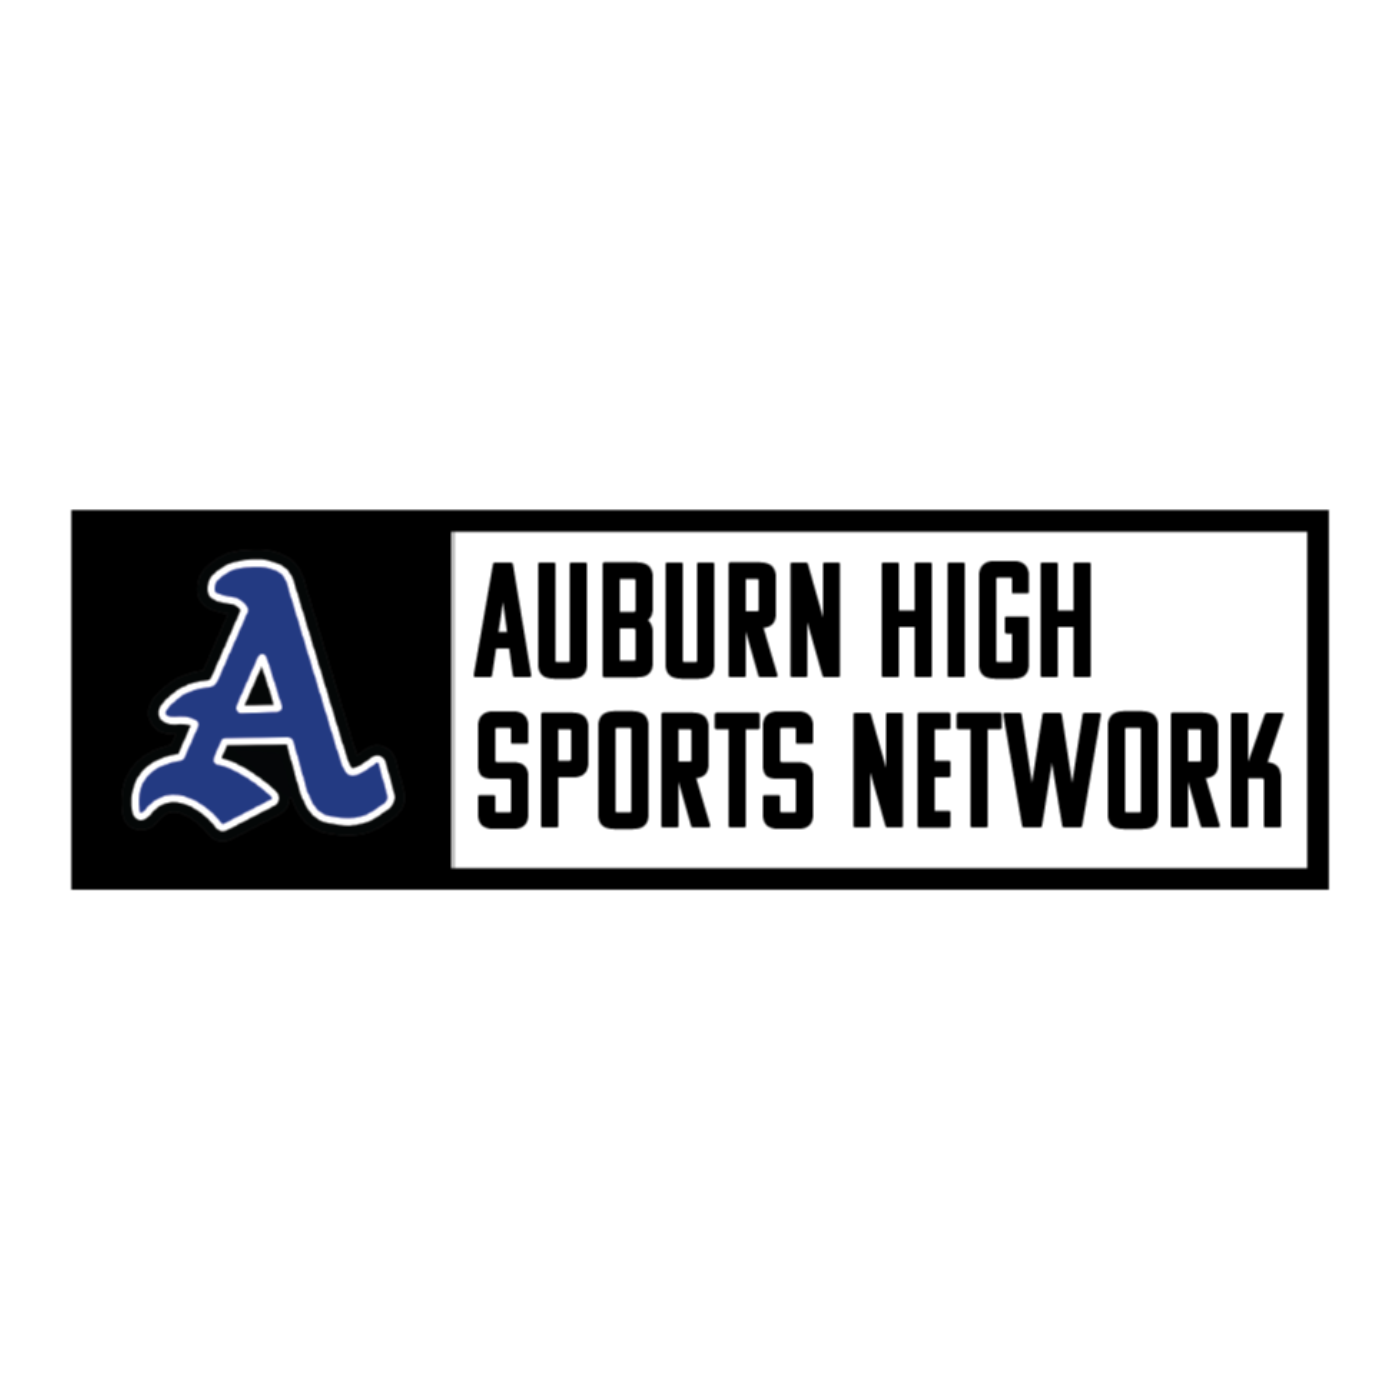 (Football) Auburn at Prattville - 09/03/21